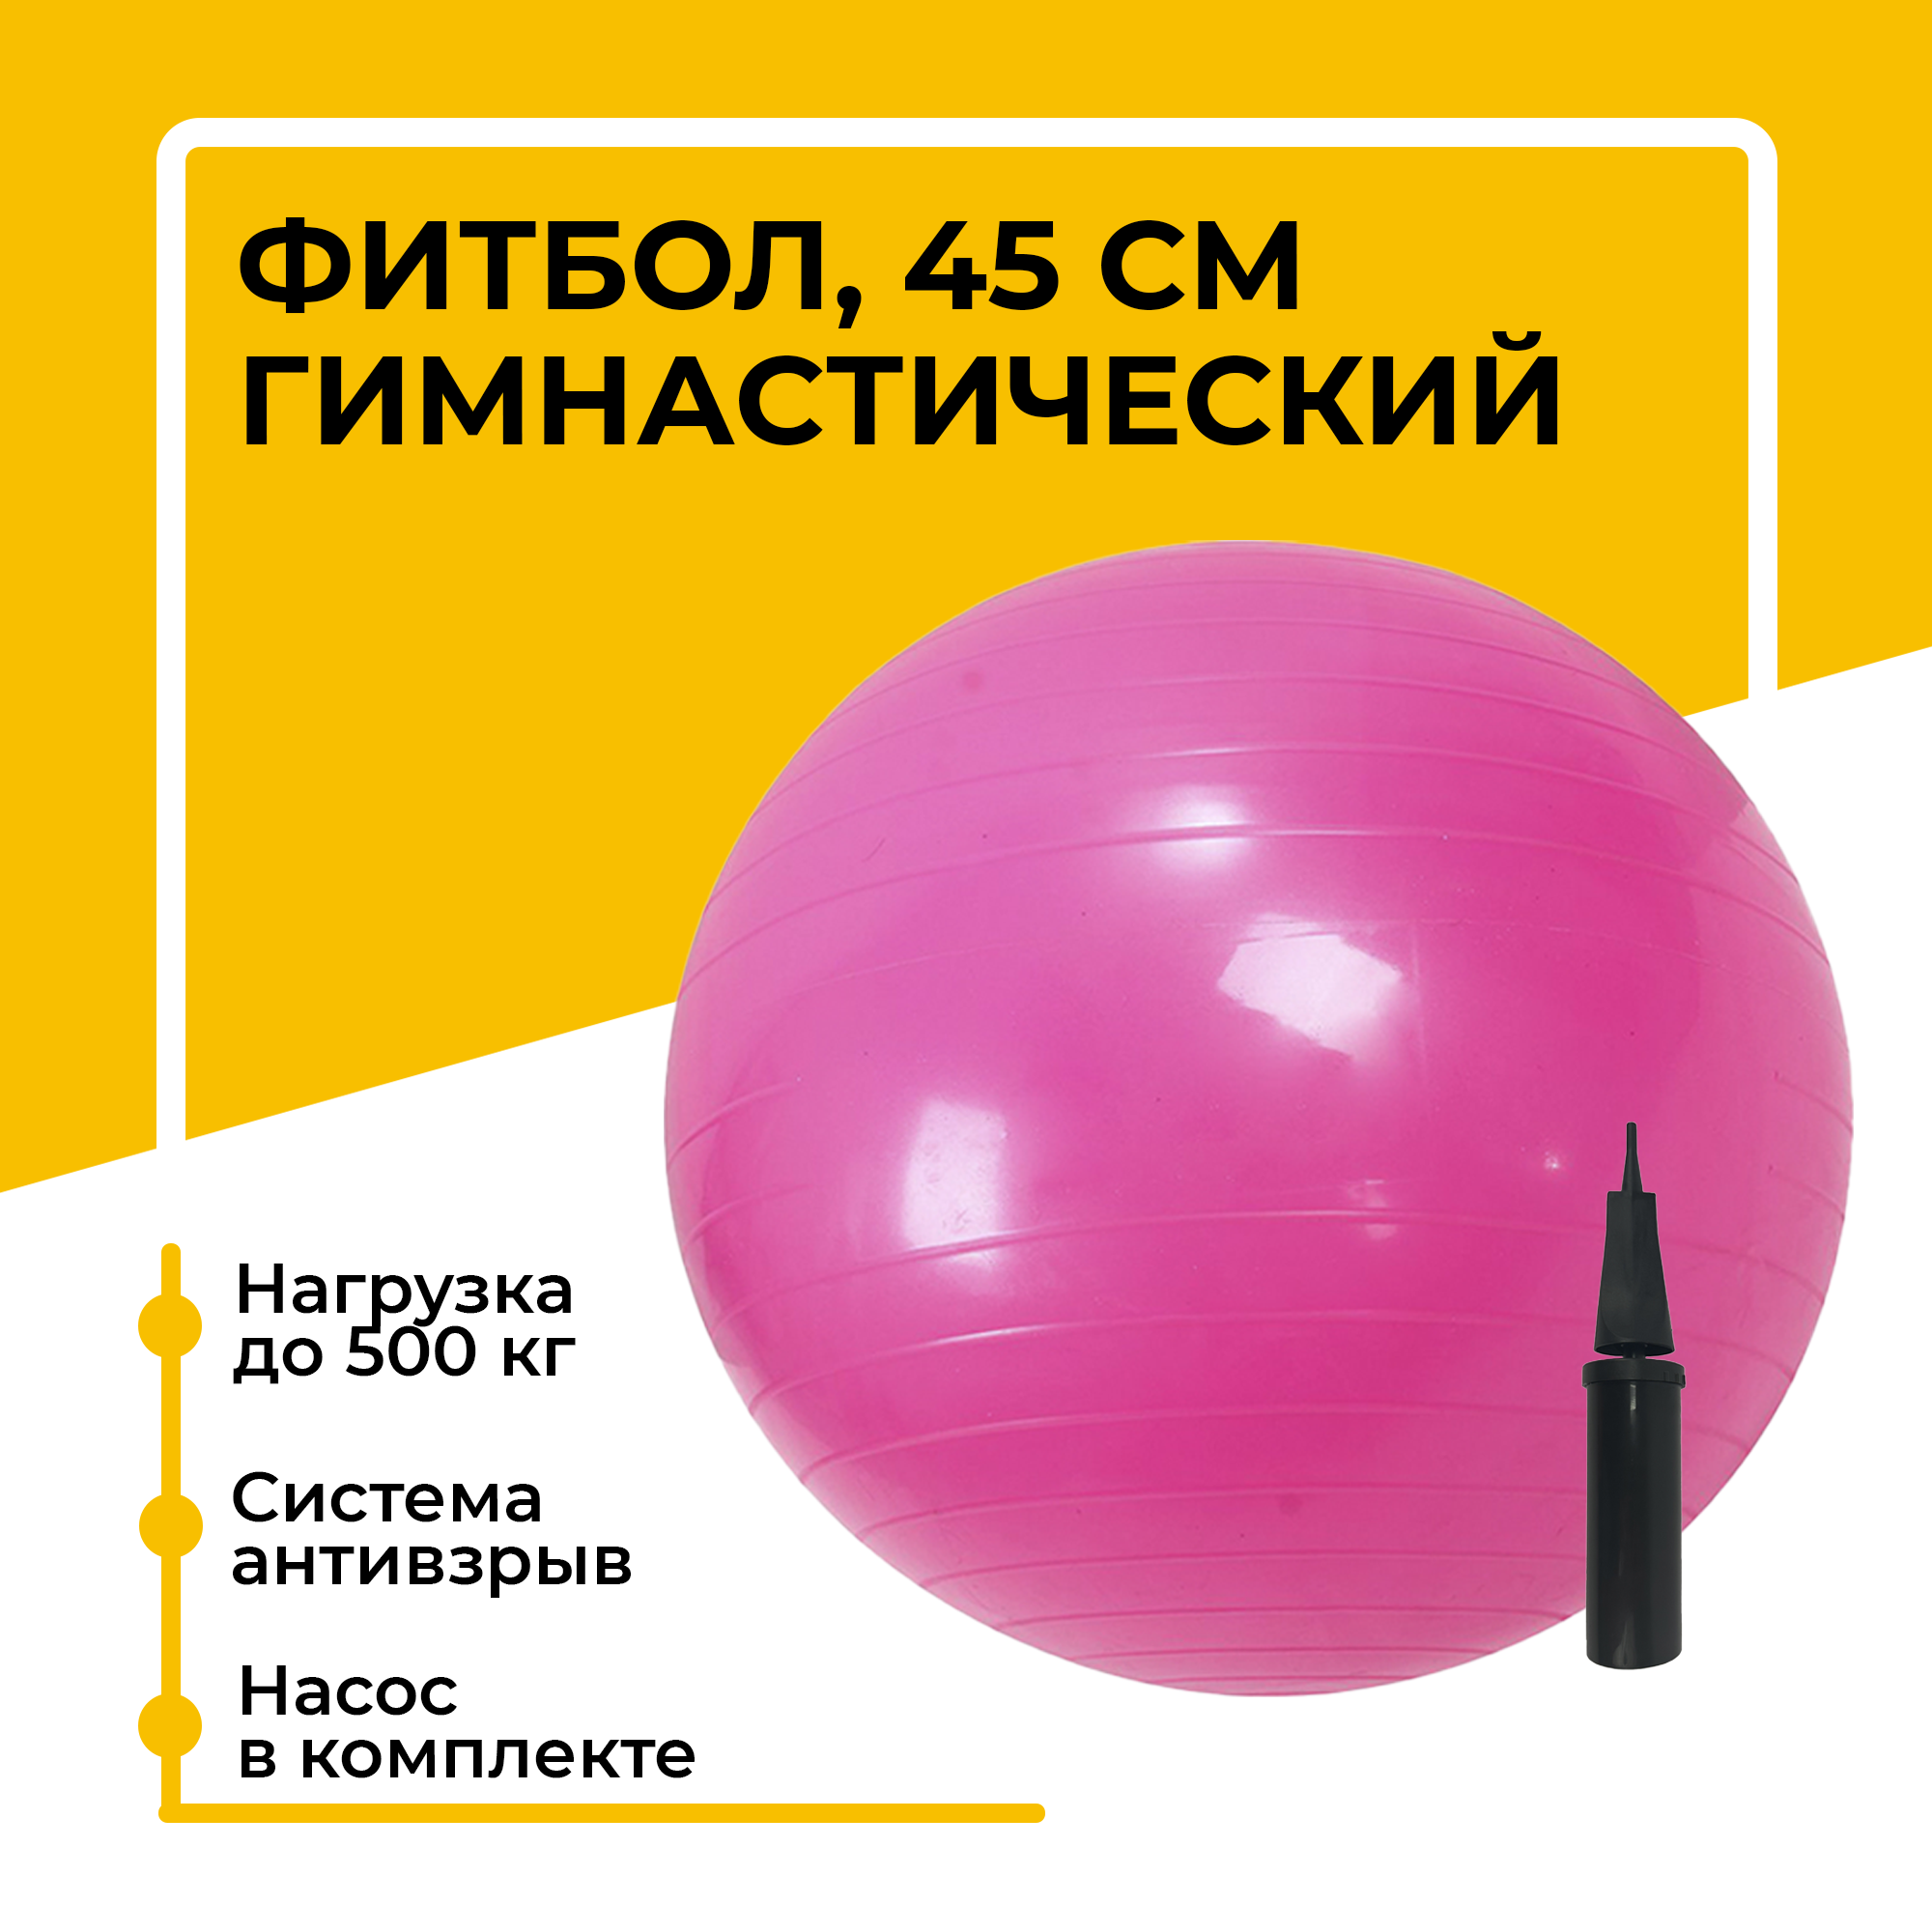 Фитбол, гимнастический мяч для занятий спортом, розовый, 45 см